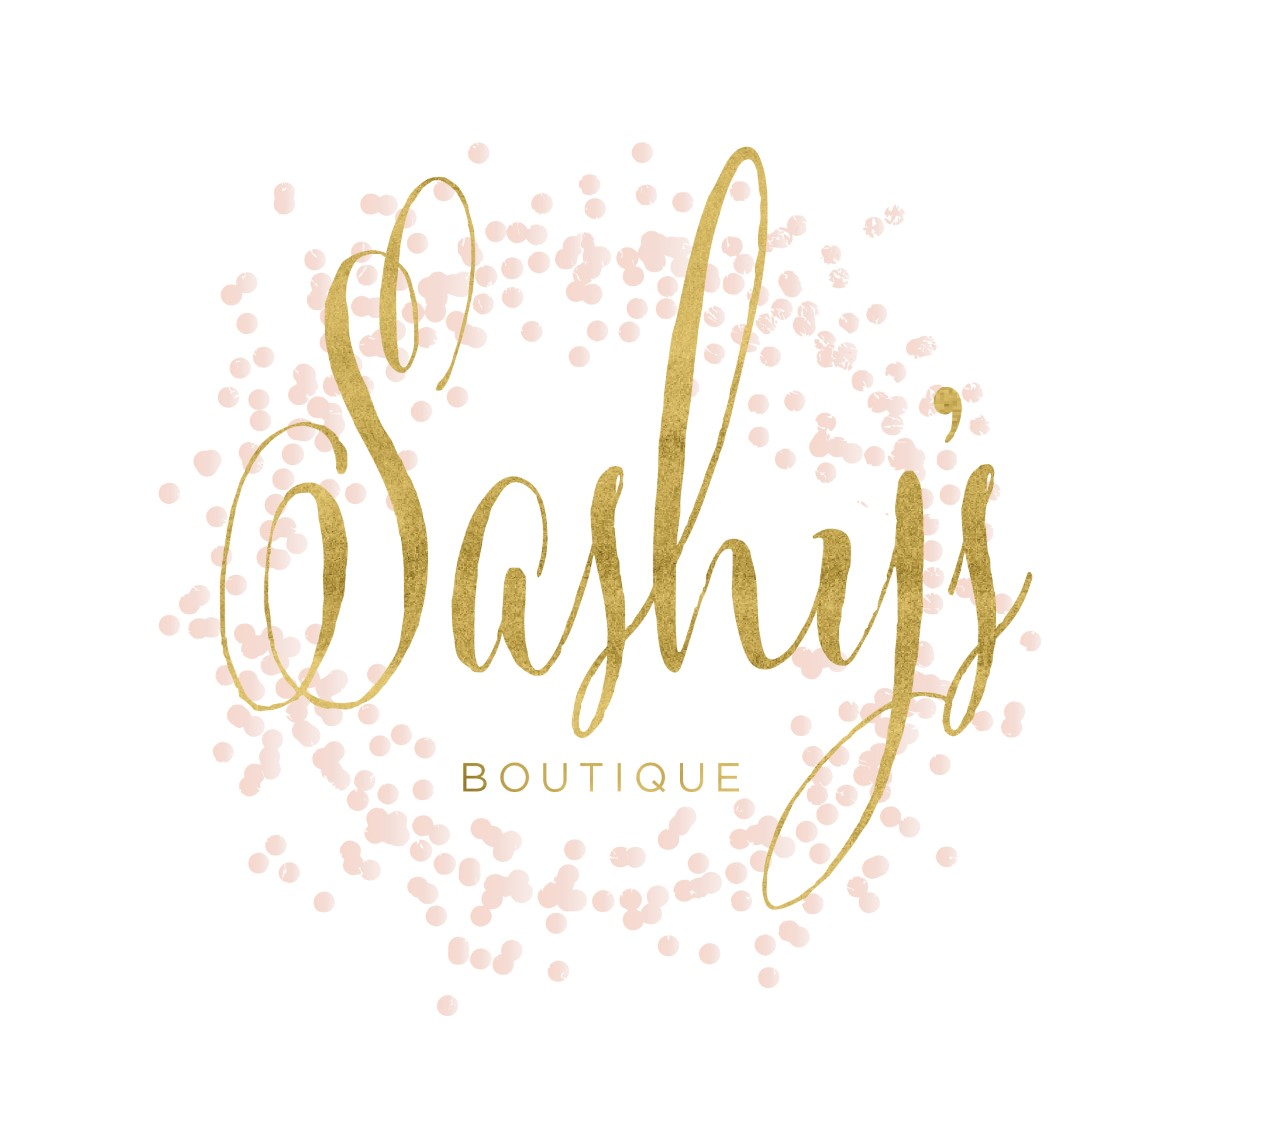 Sashy's Boutique